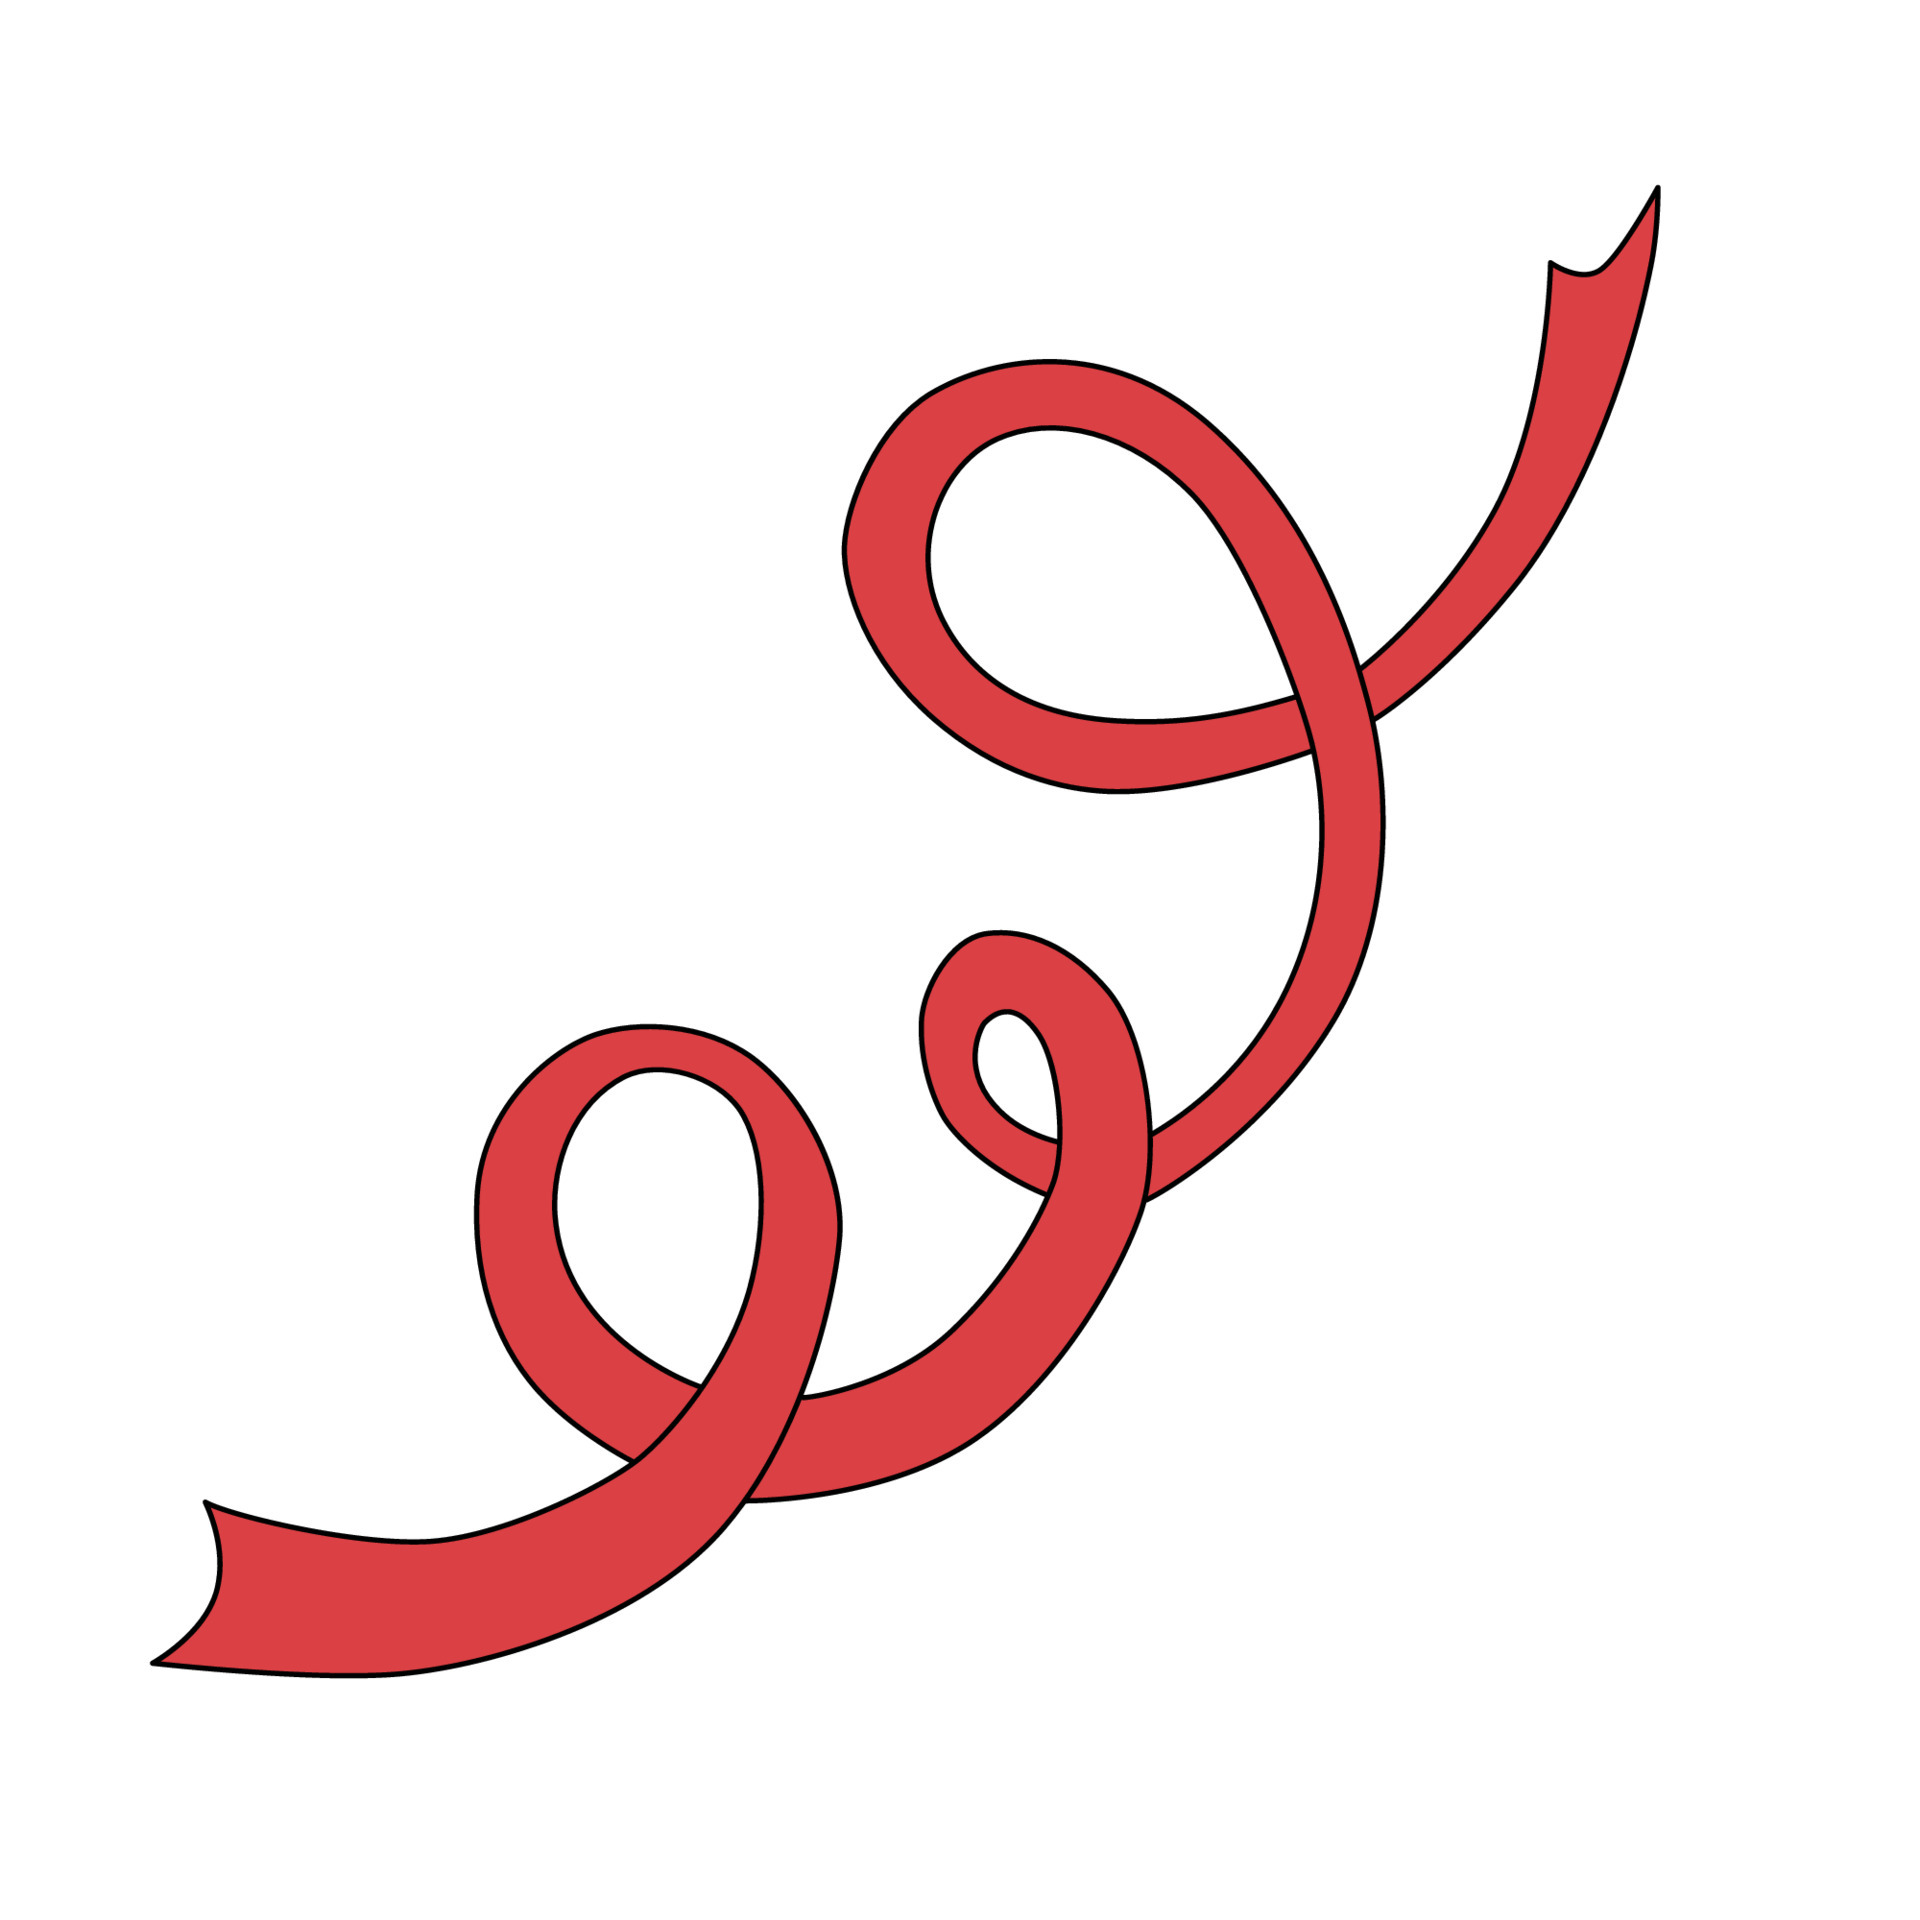 https://static.vecteezy.com/ti/vecteur-libre/p3/5656565-ruban-rouge-en-cartoon-style-bande-pour-la-gymnastique-rythmique-ou-decoration-design-mignon-illustrationle-isole-sur-fond-blanc-vectoriel.jpg